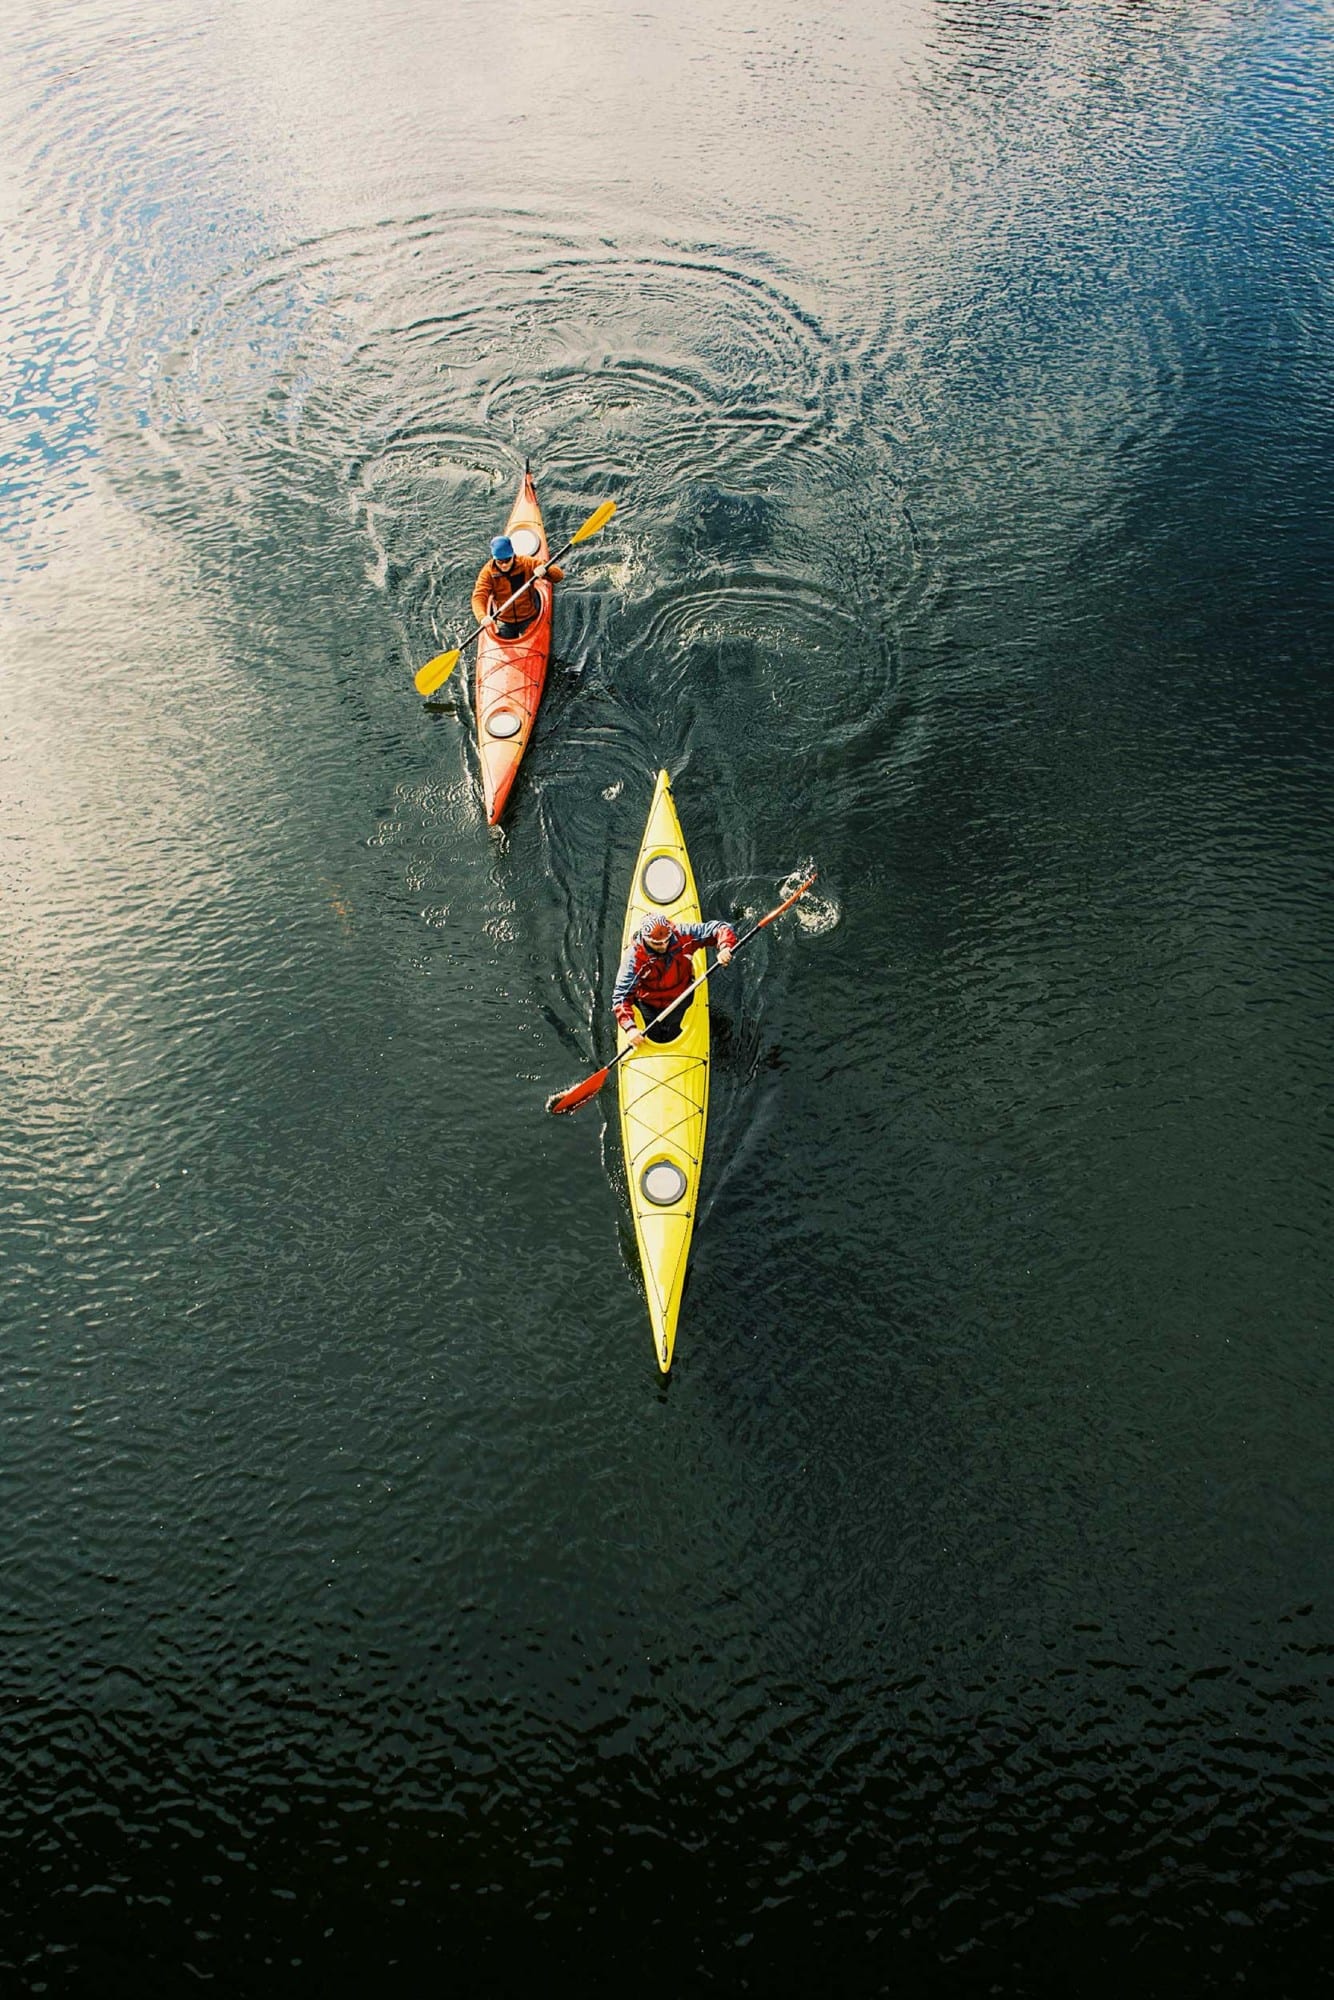 River Kayaking.